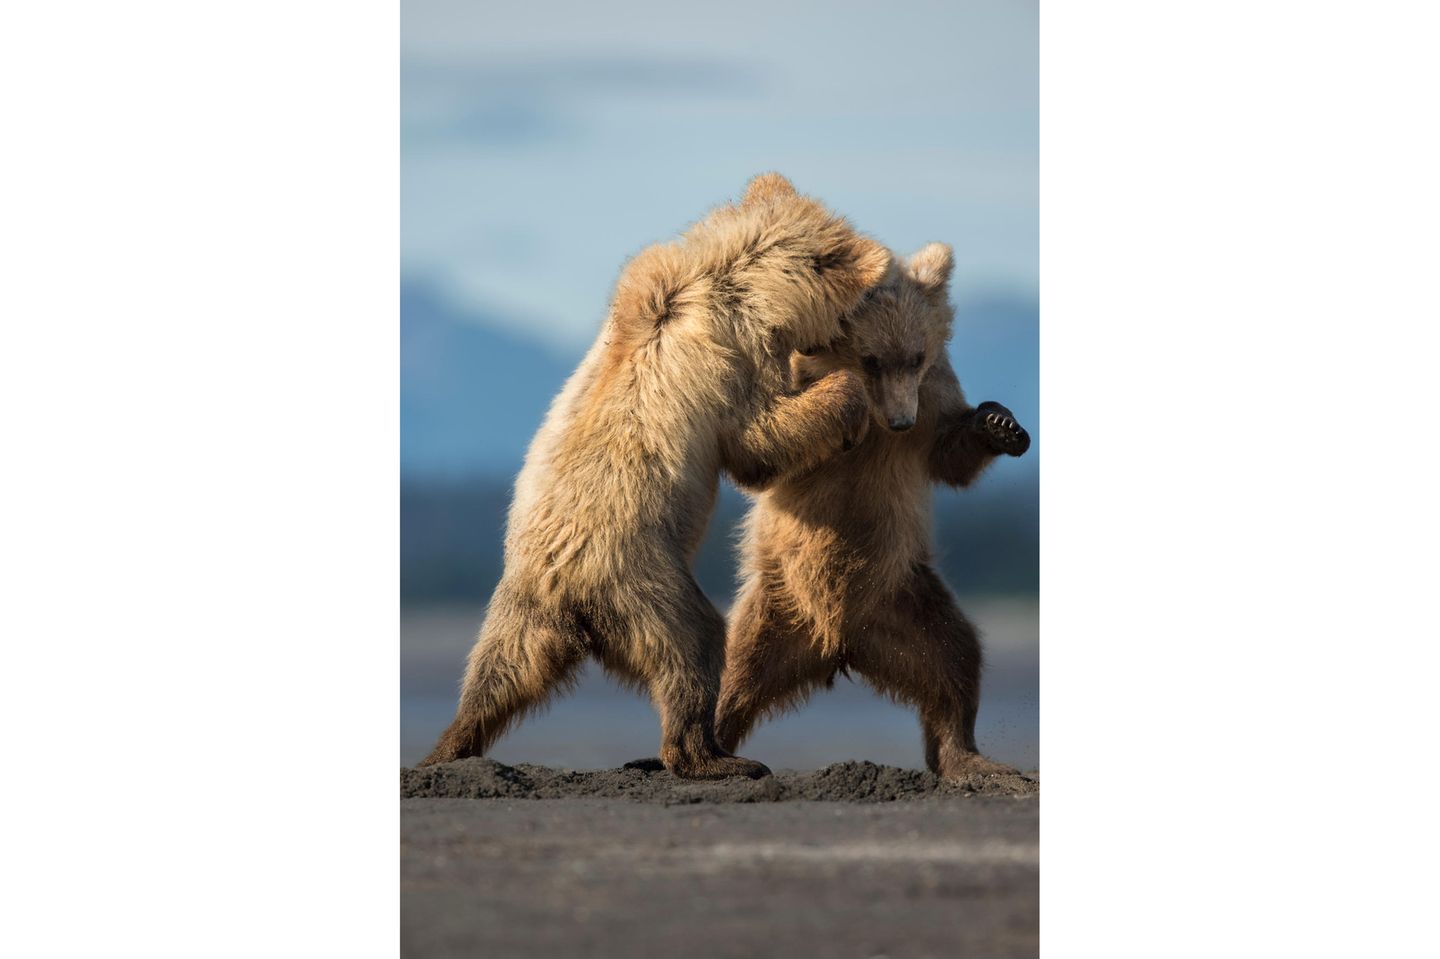 28.02.2022      "Diesen beiden 1.5-jährigen Braunbären wurde es langweilig. Und so begannen sie, auf eine spielerische Art zu kämpfen. Dabei erwecken sie jedoch vielmehr den Eindruck, als ob sie gerade einen Tanz zusammen aufführen."      Ort: Lake Clark National Park, Alaska  Kamera: Nikon D4s mit Nikon 600 mm F4.0, ISO 500, 1/2000s, Blende 5.6  Mehr Fotos von dkphotography.ch